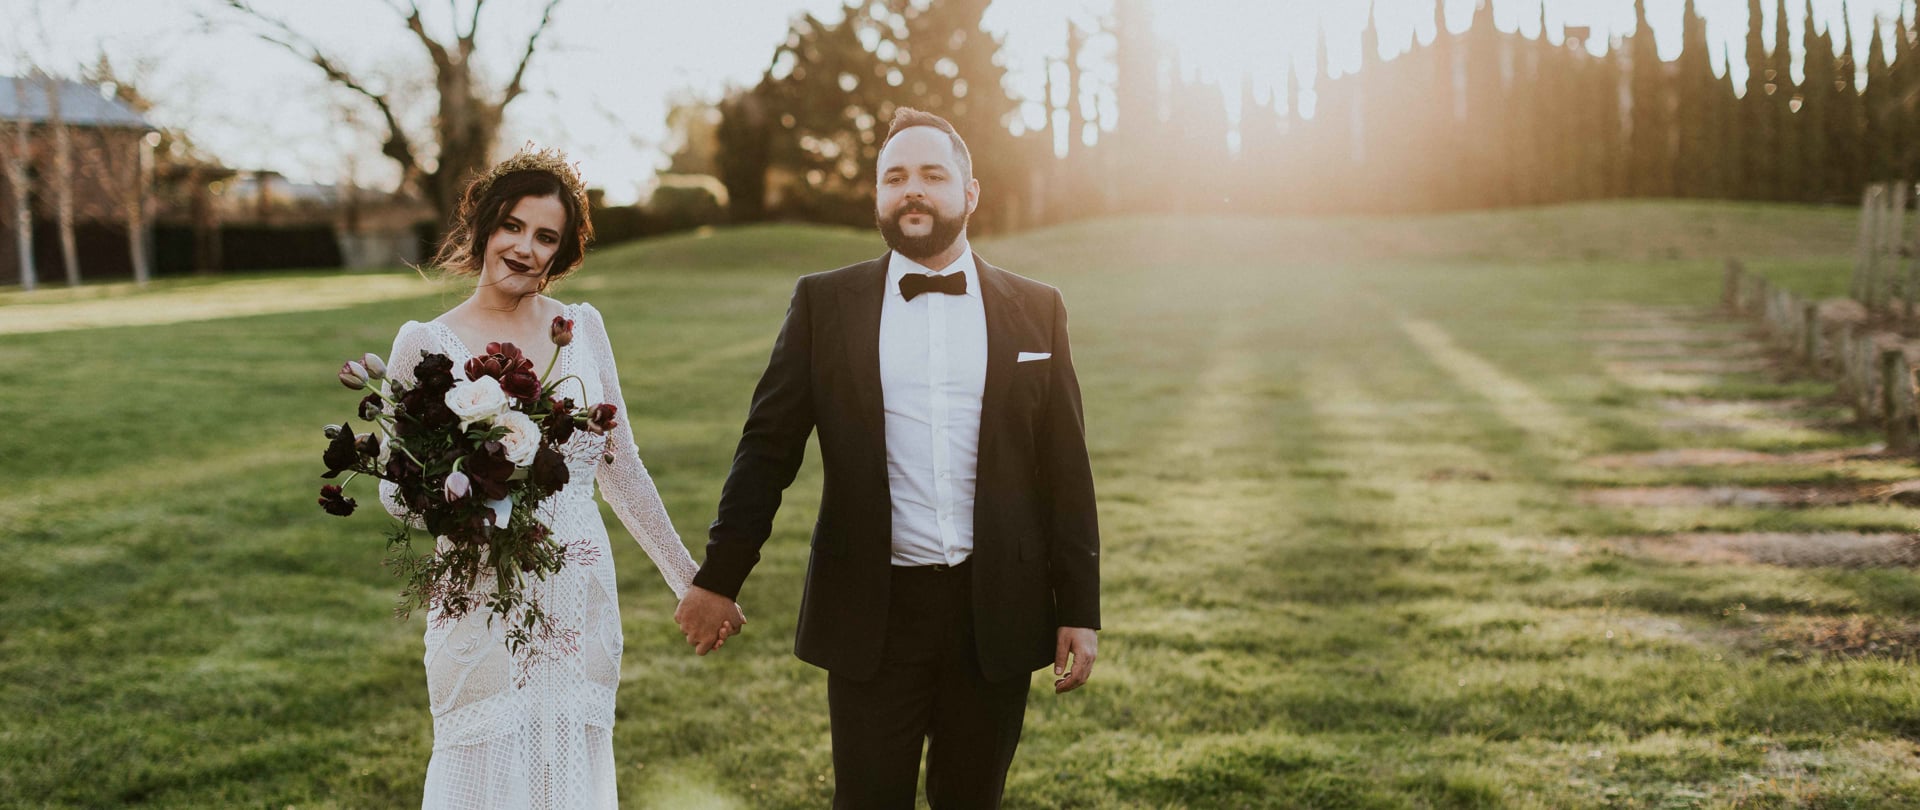 Amie & Seb Wedding Video Filmed atYarra Valley,Victoria